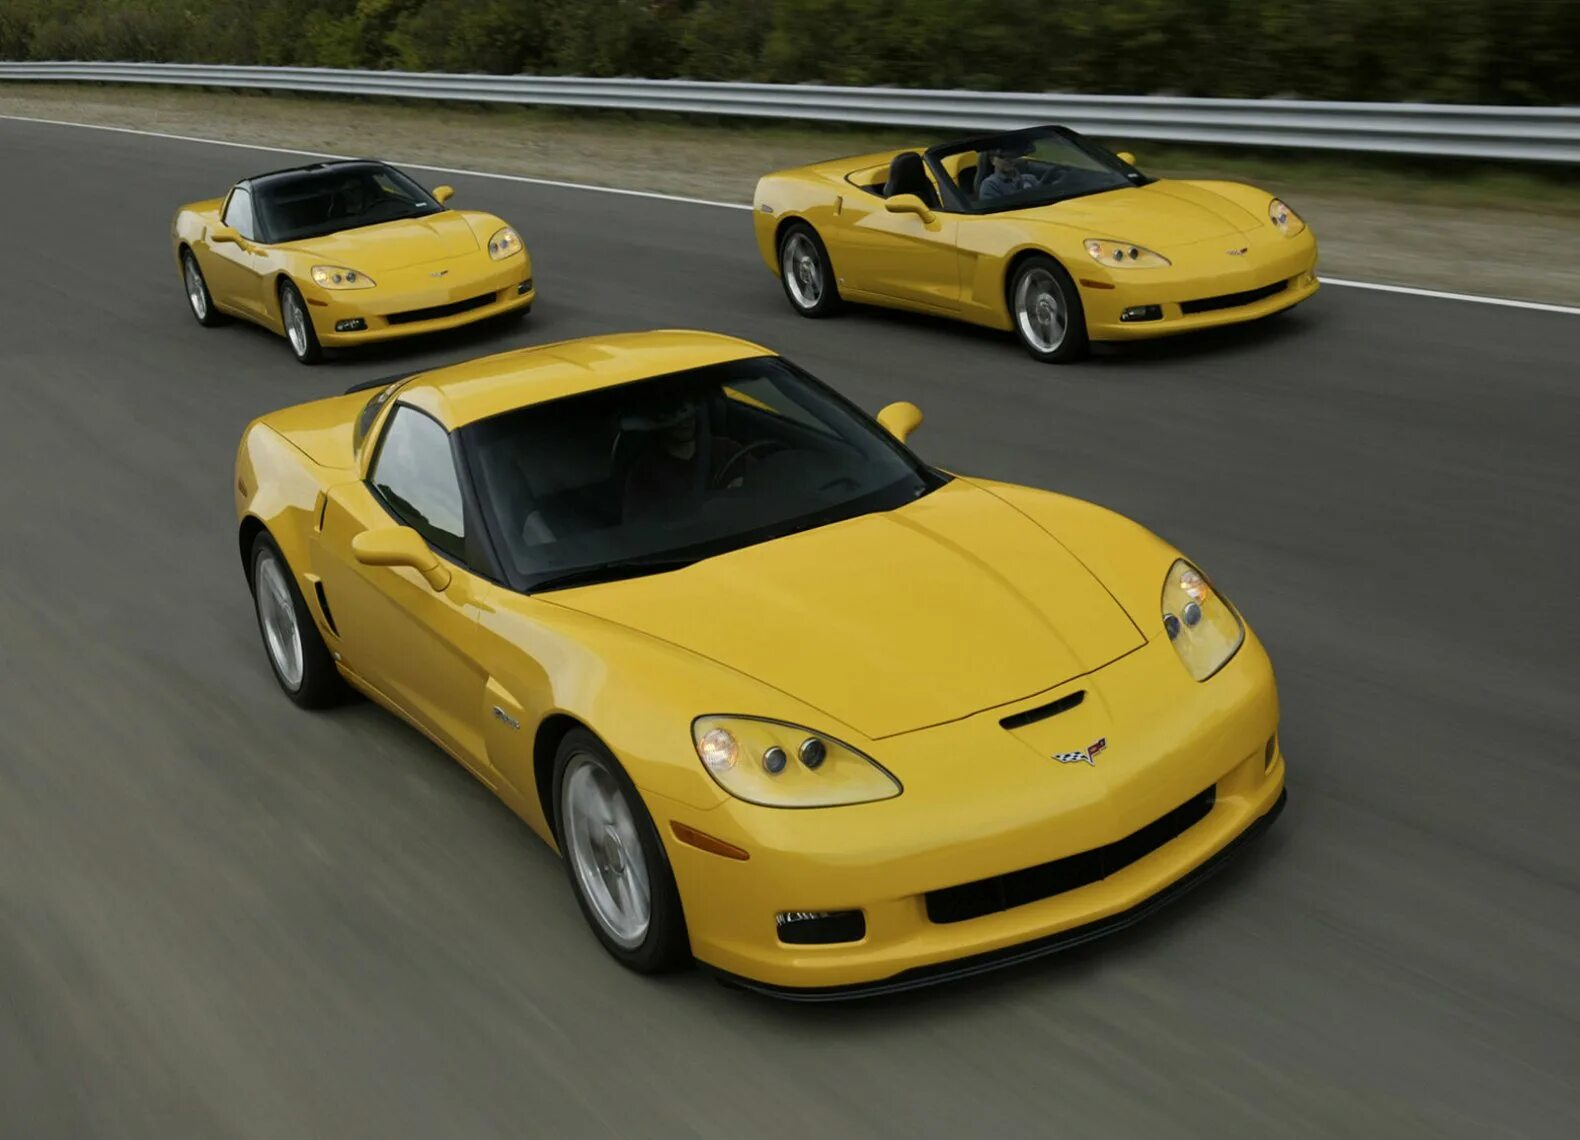 Chevrolet corvette c6. Chevrolet Corvette c6 z06. Chevrolet Corvette c6 2006. Chevrolet Corvette z06 2006. Chevrolet Corvette c6 Yellow.